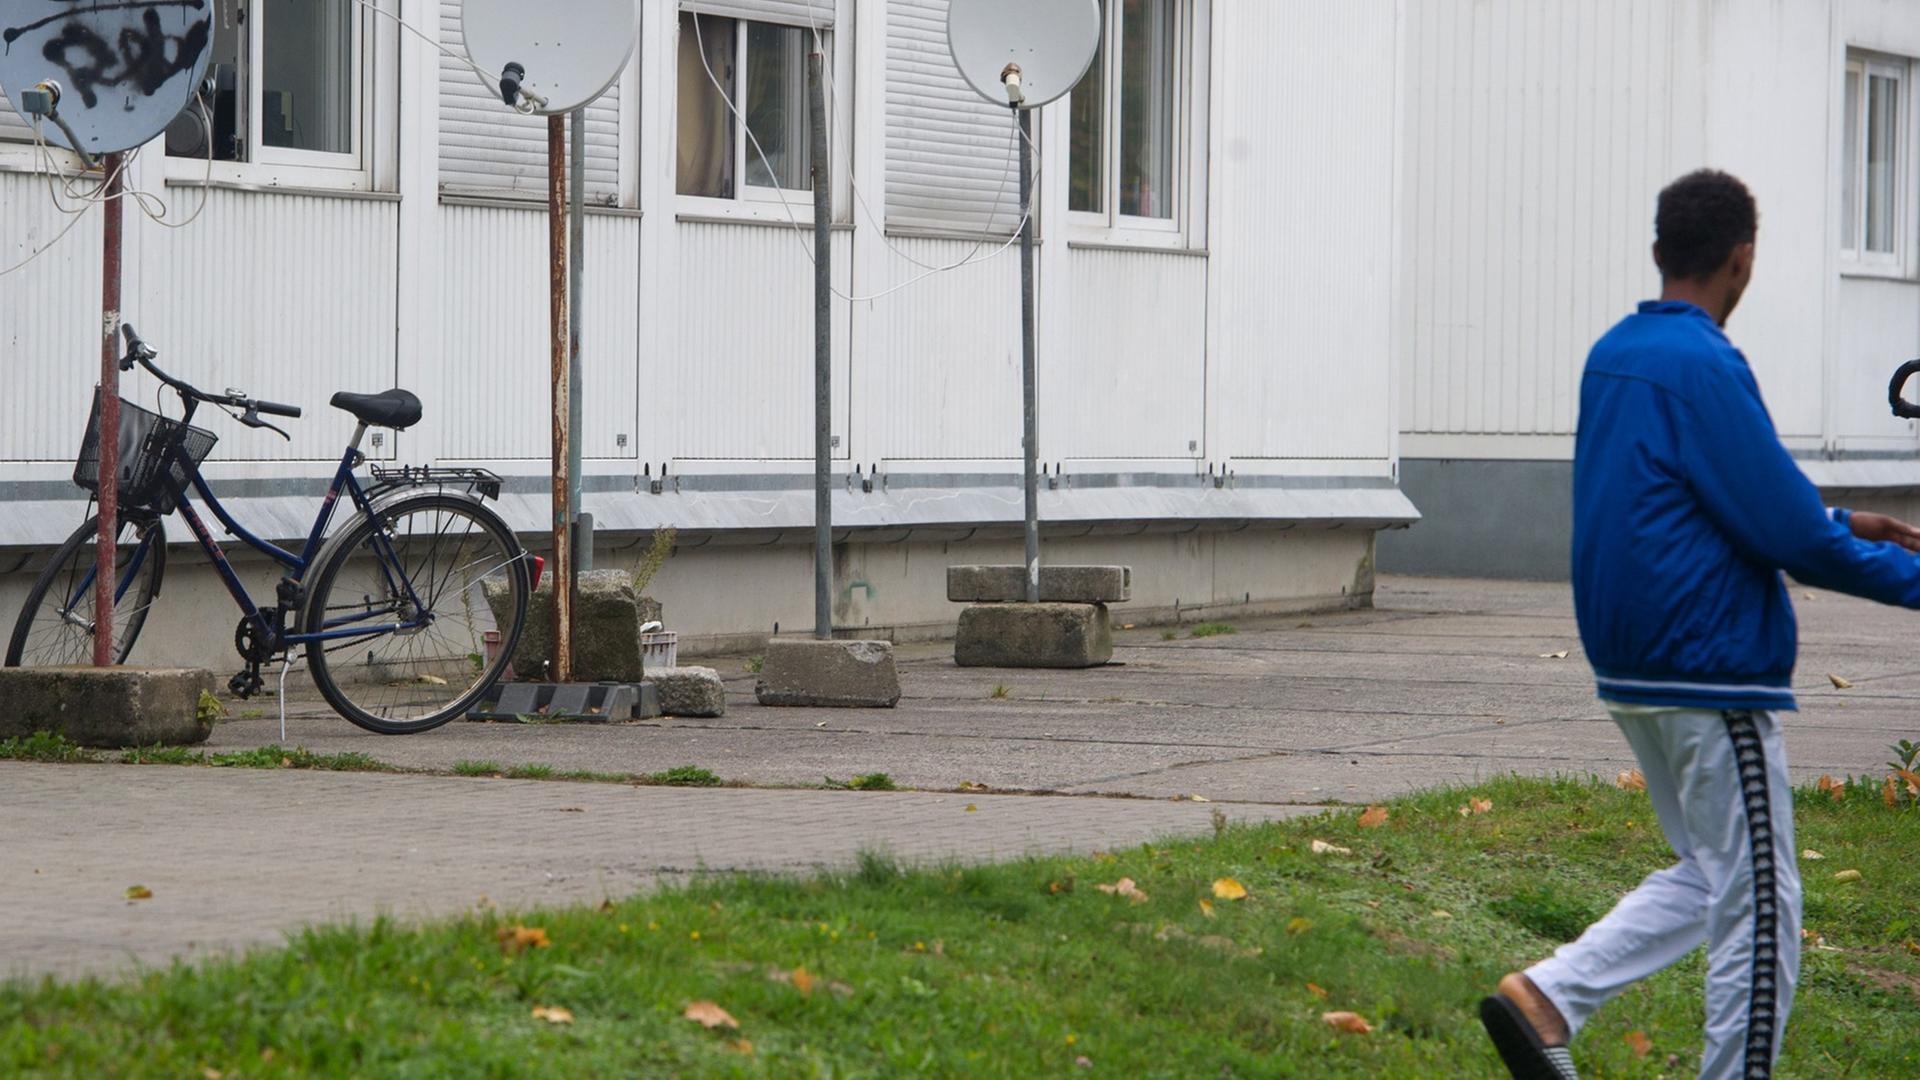 Eine Gemeinschaftsunterkunft für Flüchtlinge steht am 07.10.2014 auf der kleinen Insel Dänholm, einem Stadtteil von Stralsund (Mecklenburg-Vorpommern). Das Asylbewerberheim in Container-Bauweise, ausgestattet mit Bädern und Küchen, ist seit 1996 geöffnet.